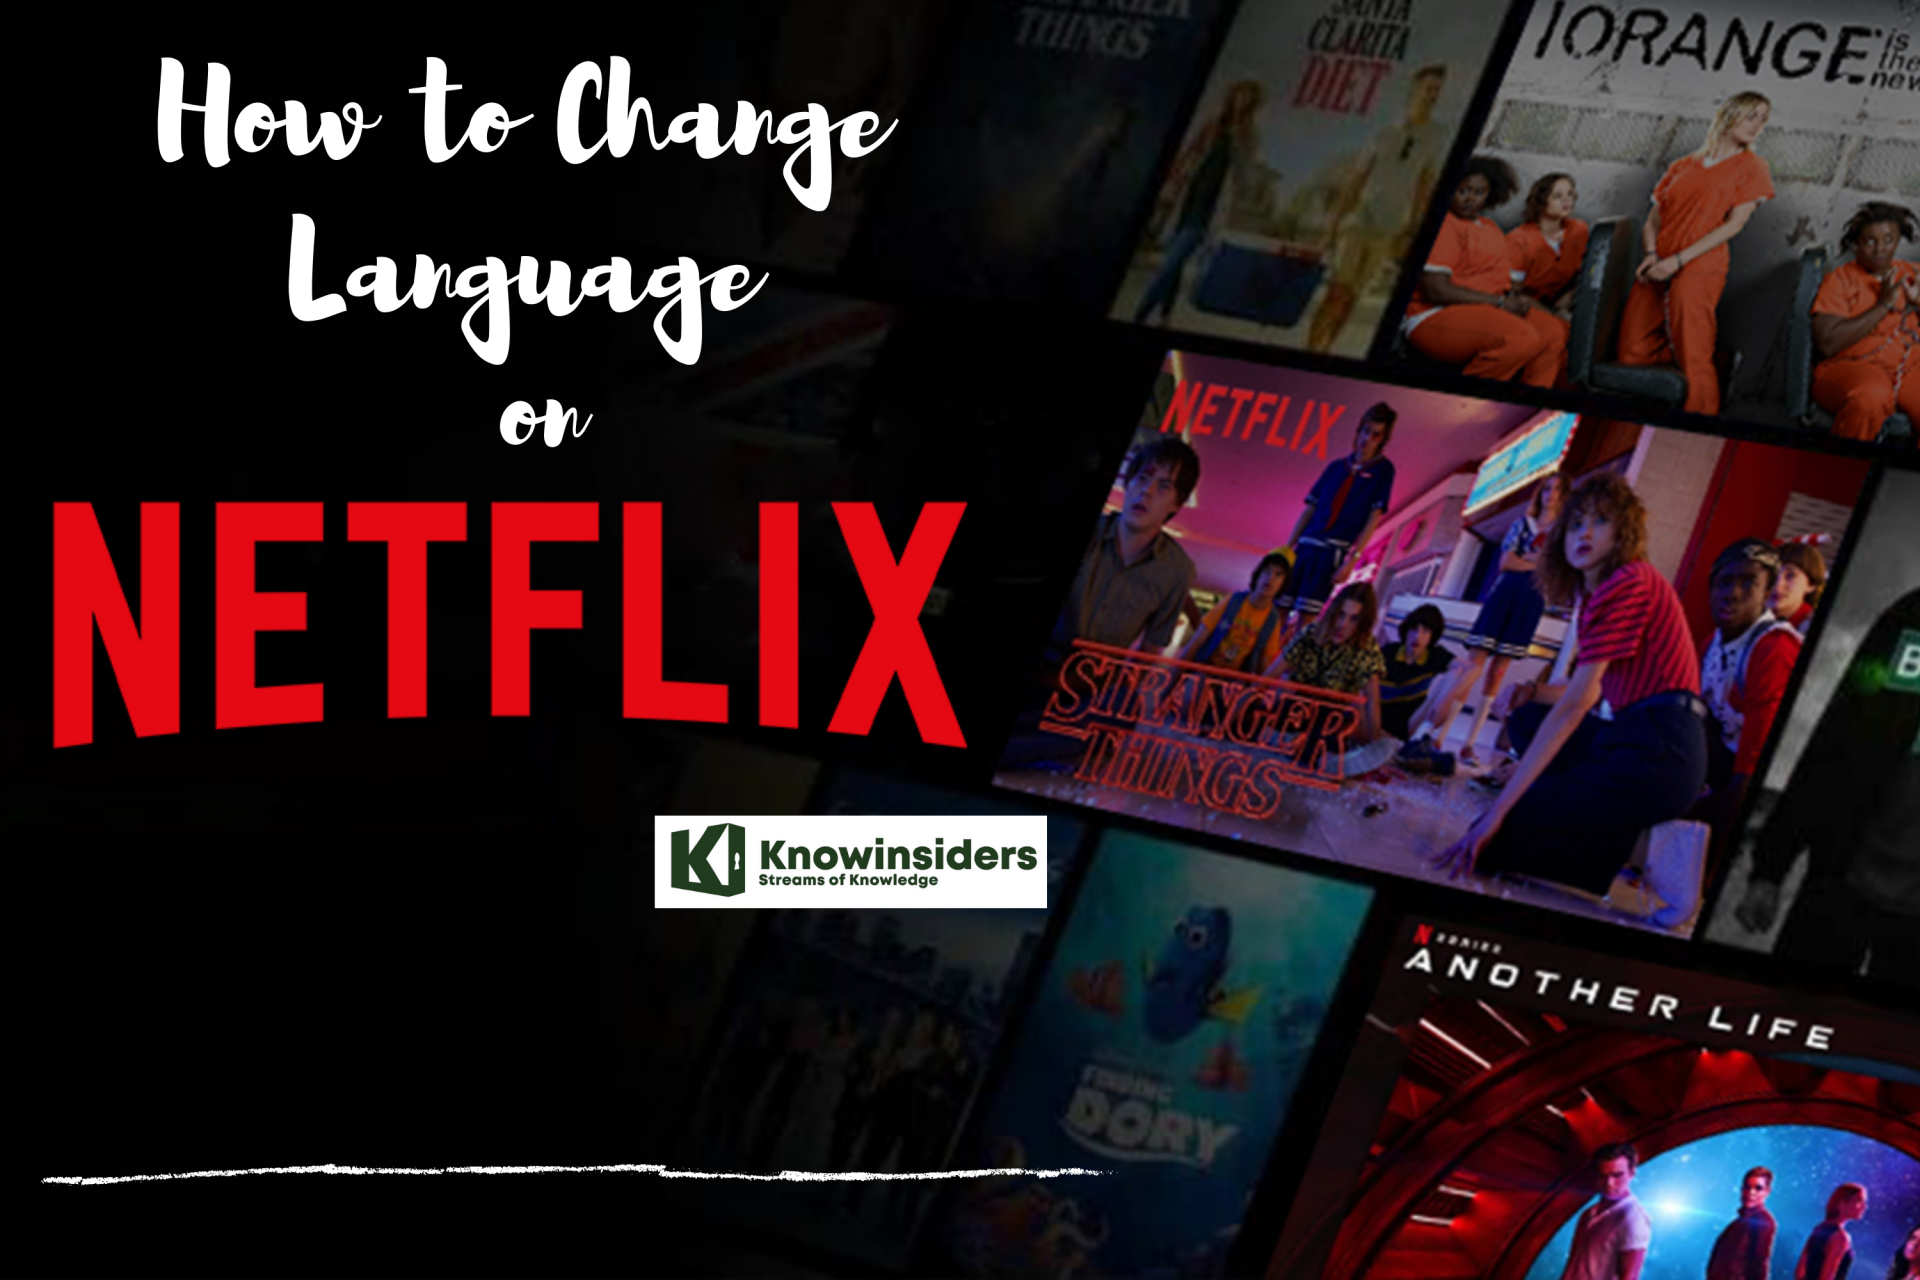 Netflix, Phoro: KnowInsiders